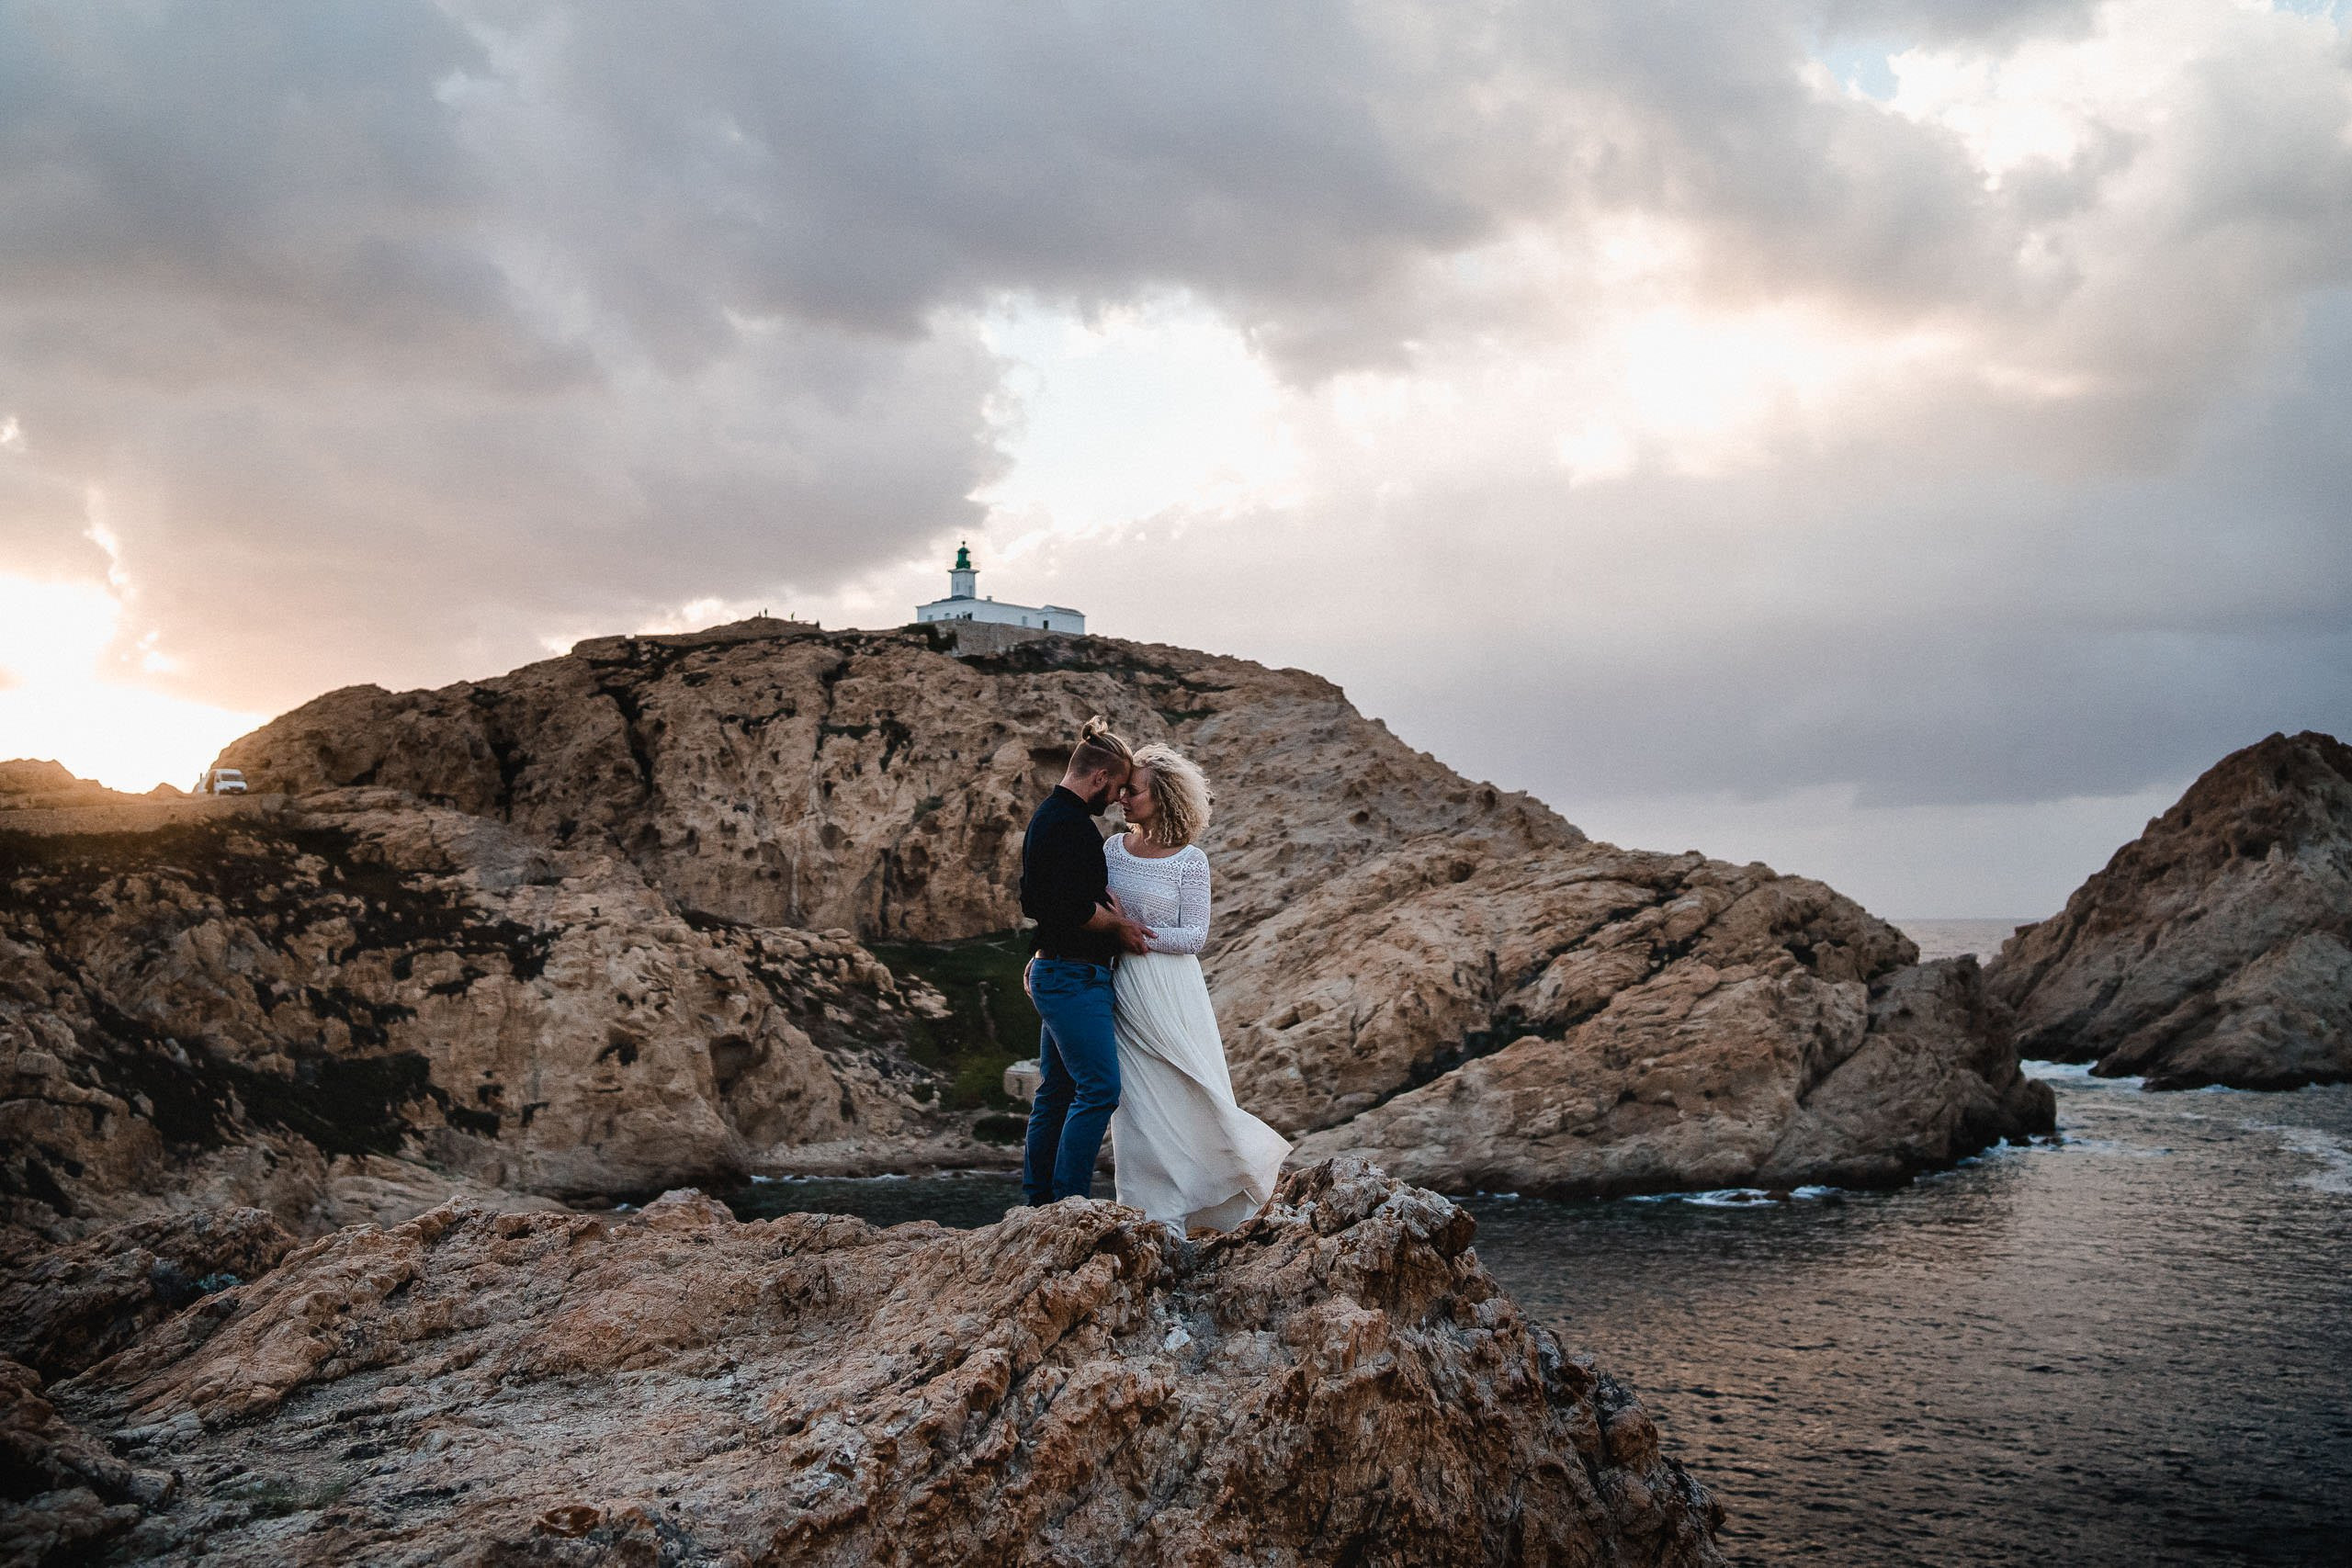 Aida + Tim | Hochzeitsfotografen am Bodensee Elopement - Korsika, Frankreich  - Hochzeitsfotografie von Aida und Tim